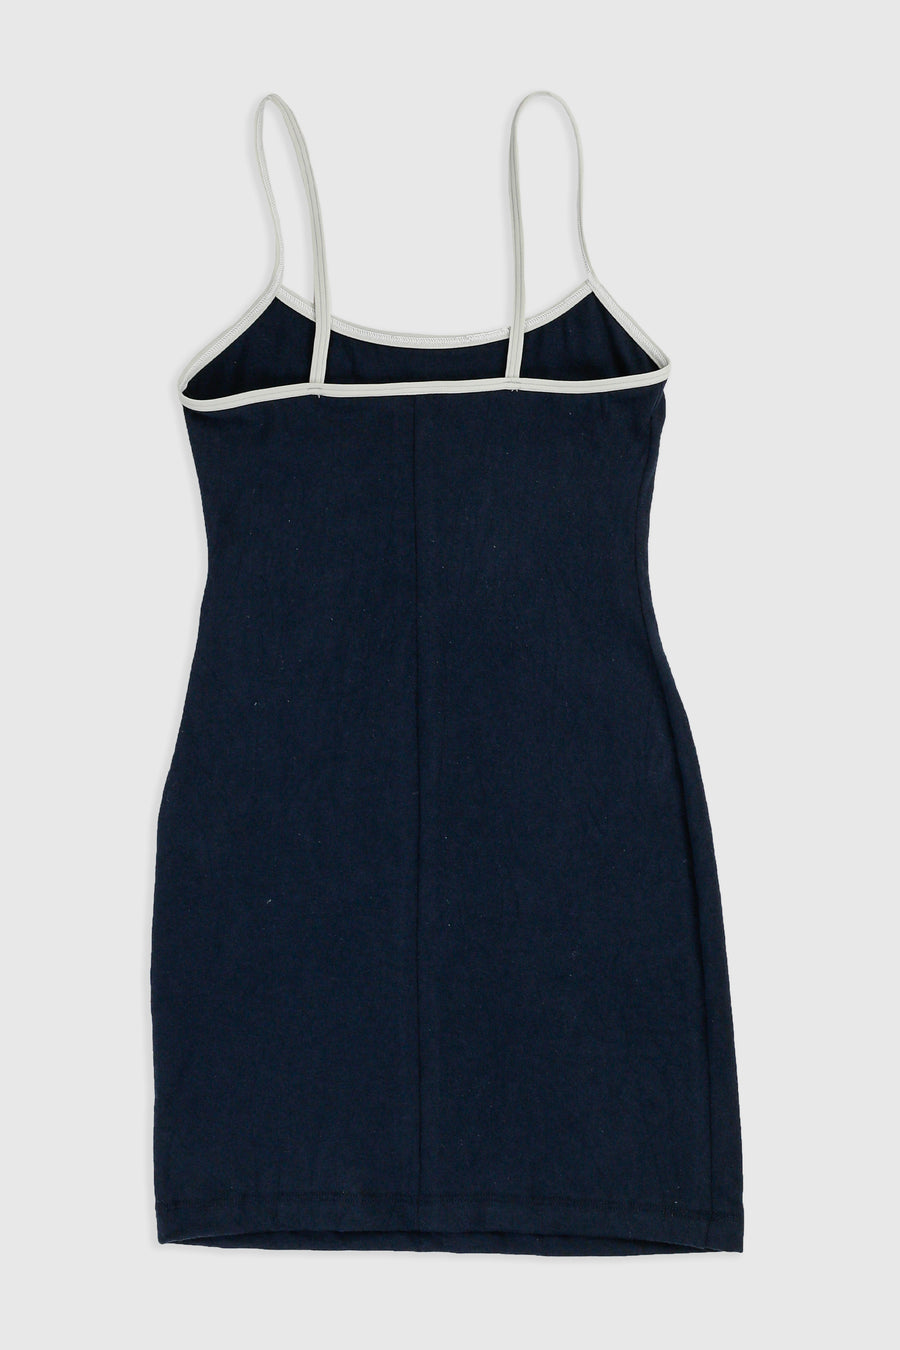 Rework Carhartt Mini Dress - XS, S, M, L, XL